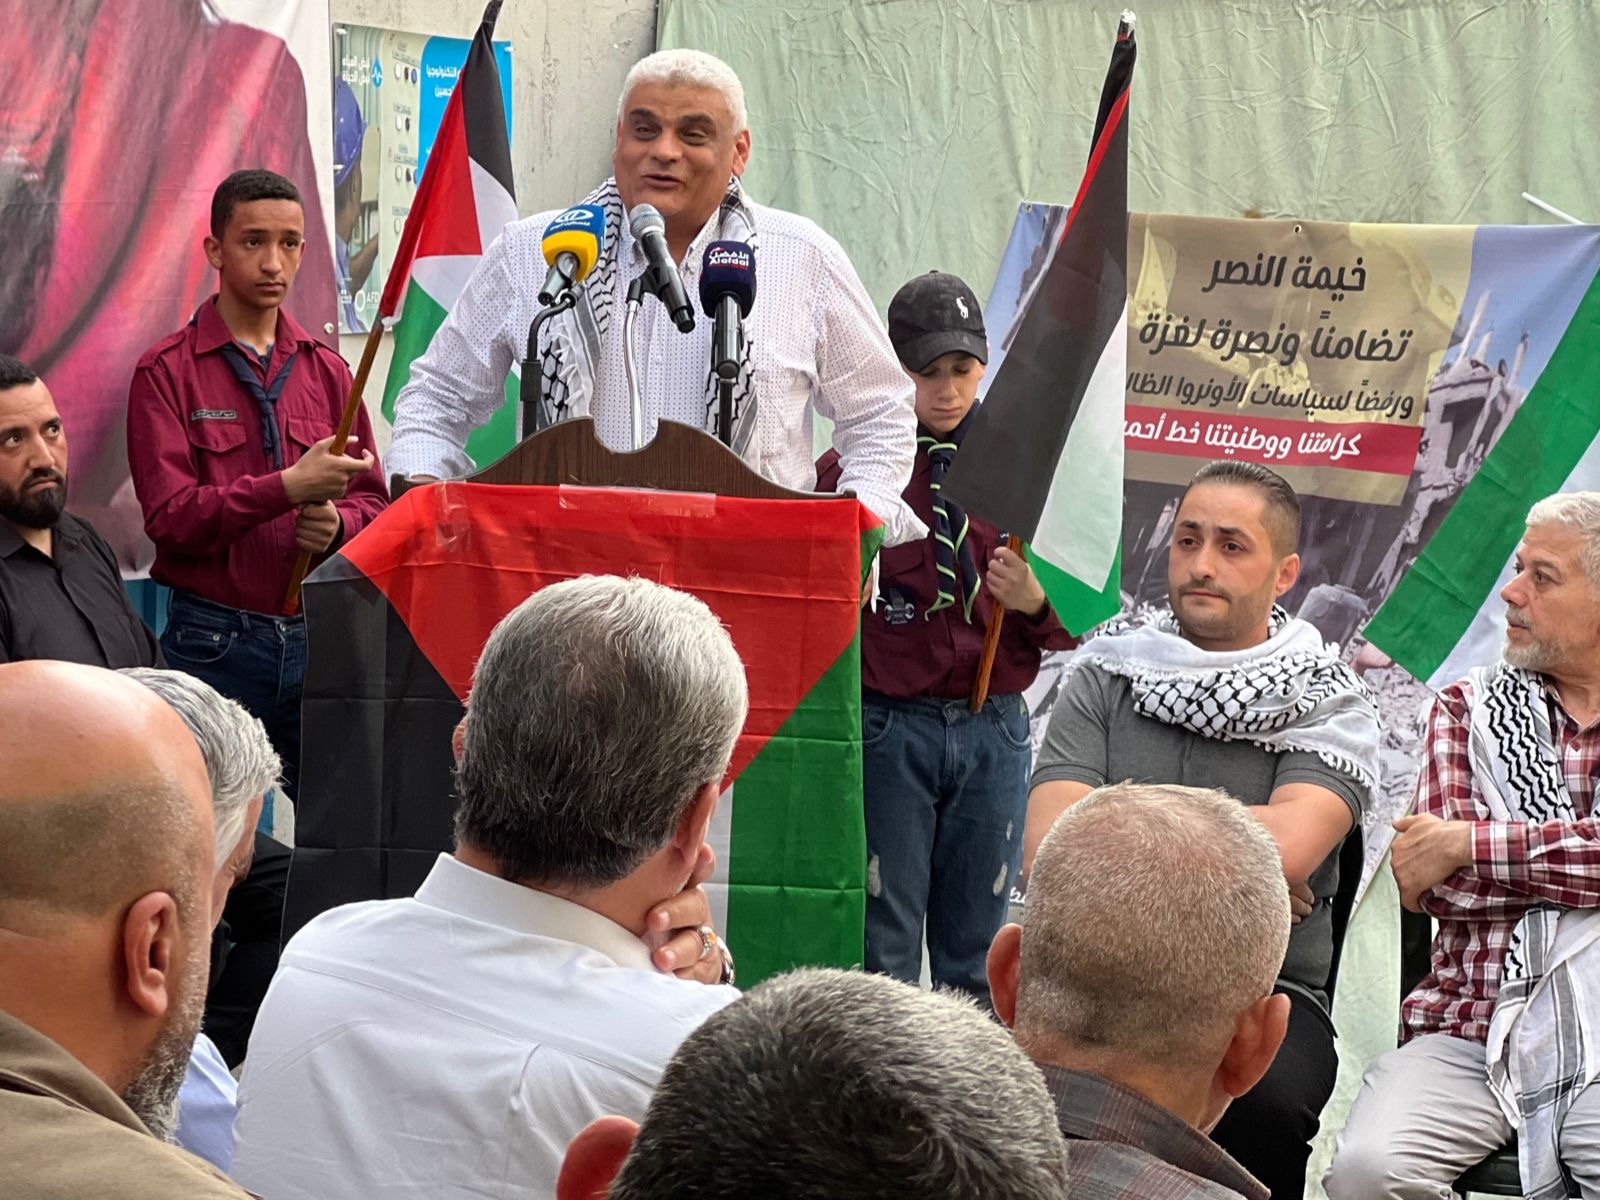 شريف: لا نخضع لابتزاز ولا مساومة على انتمائنا الوطني لفلسطين، ولن نتنازل عن أي حق من حقوقنا